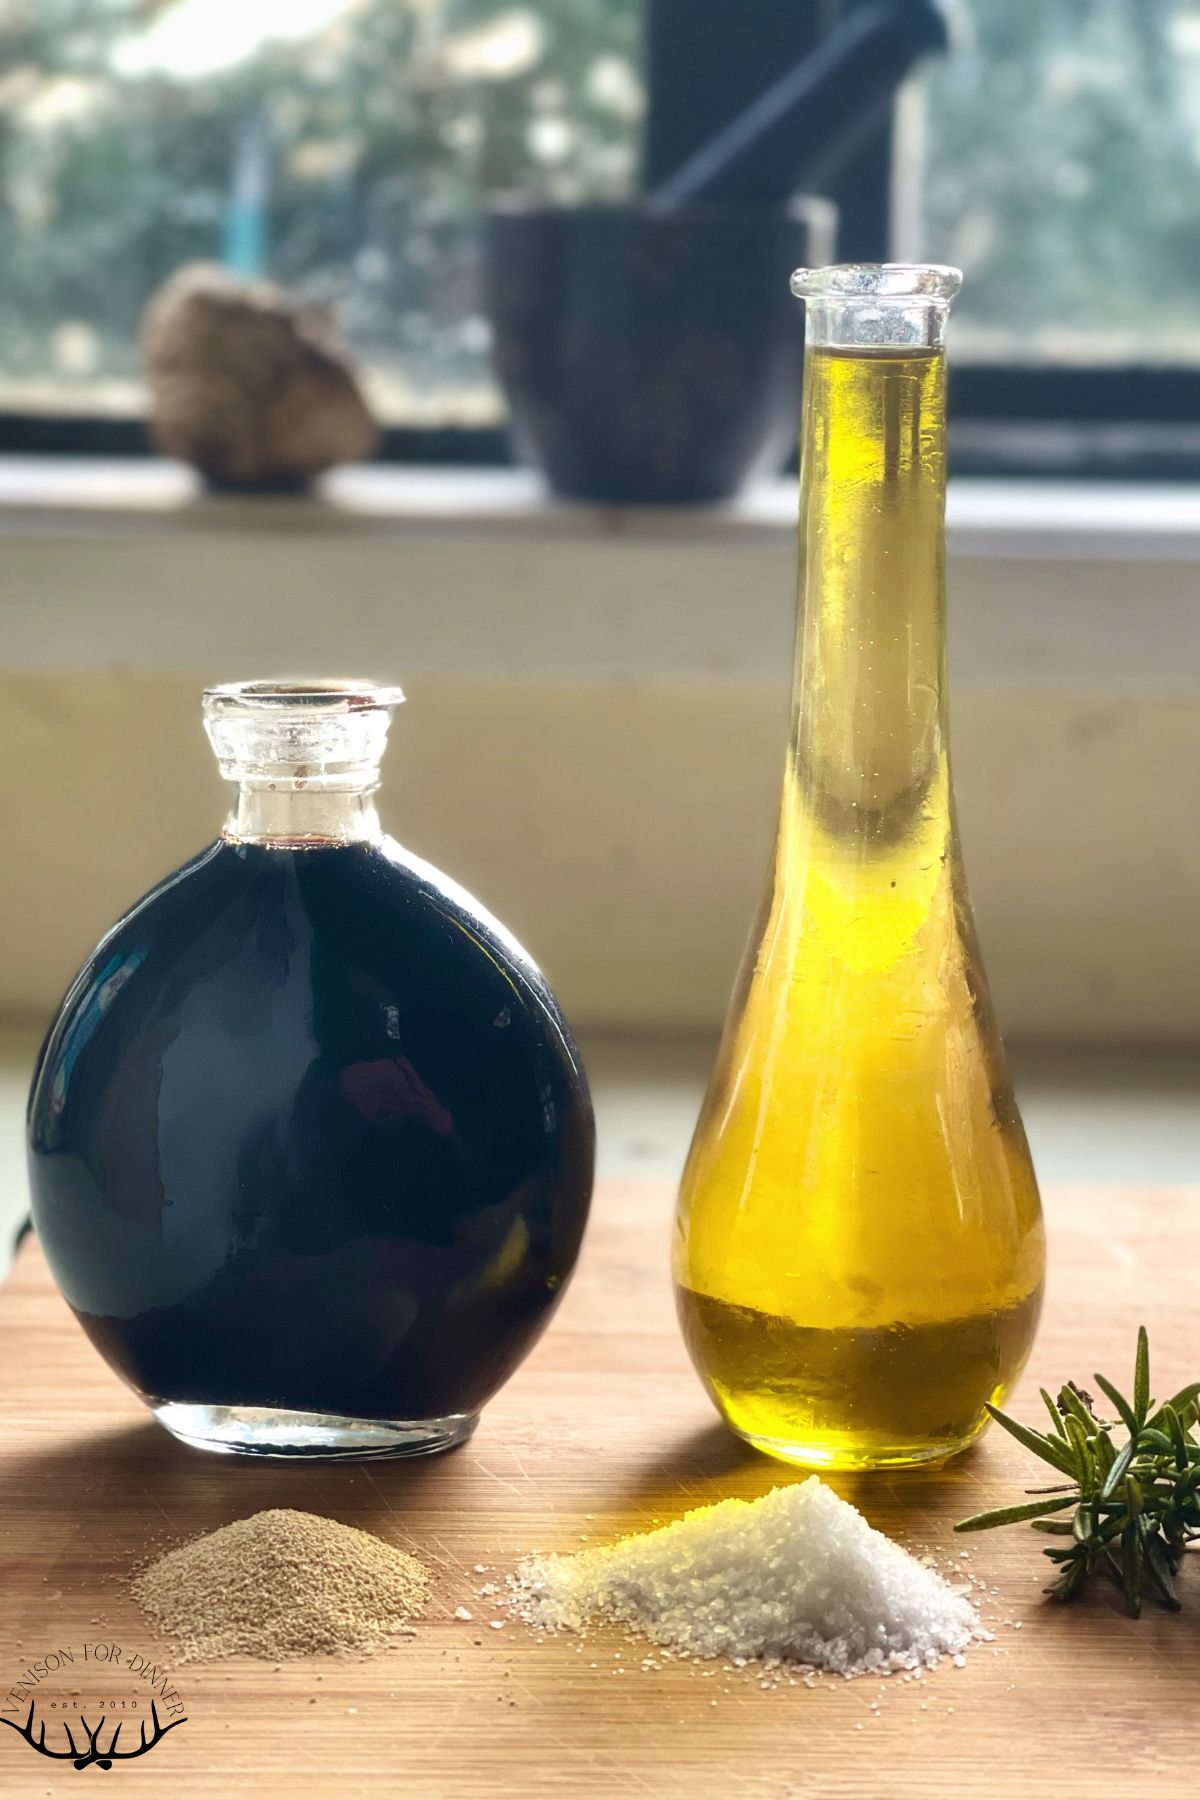 Bottles of oil and balsamic vinegar.